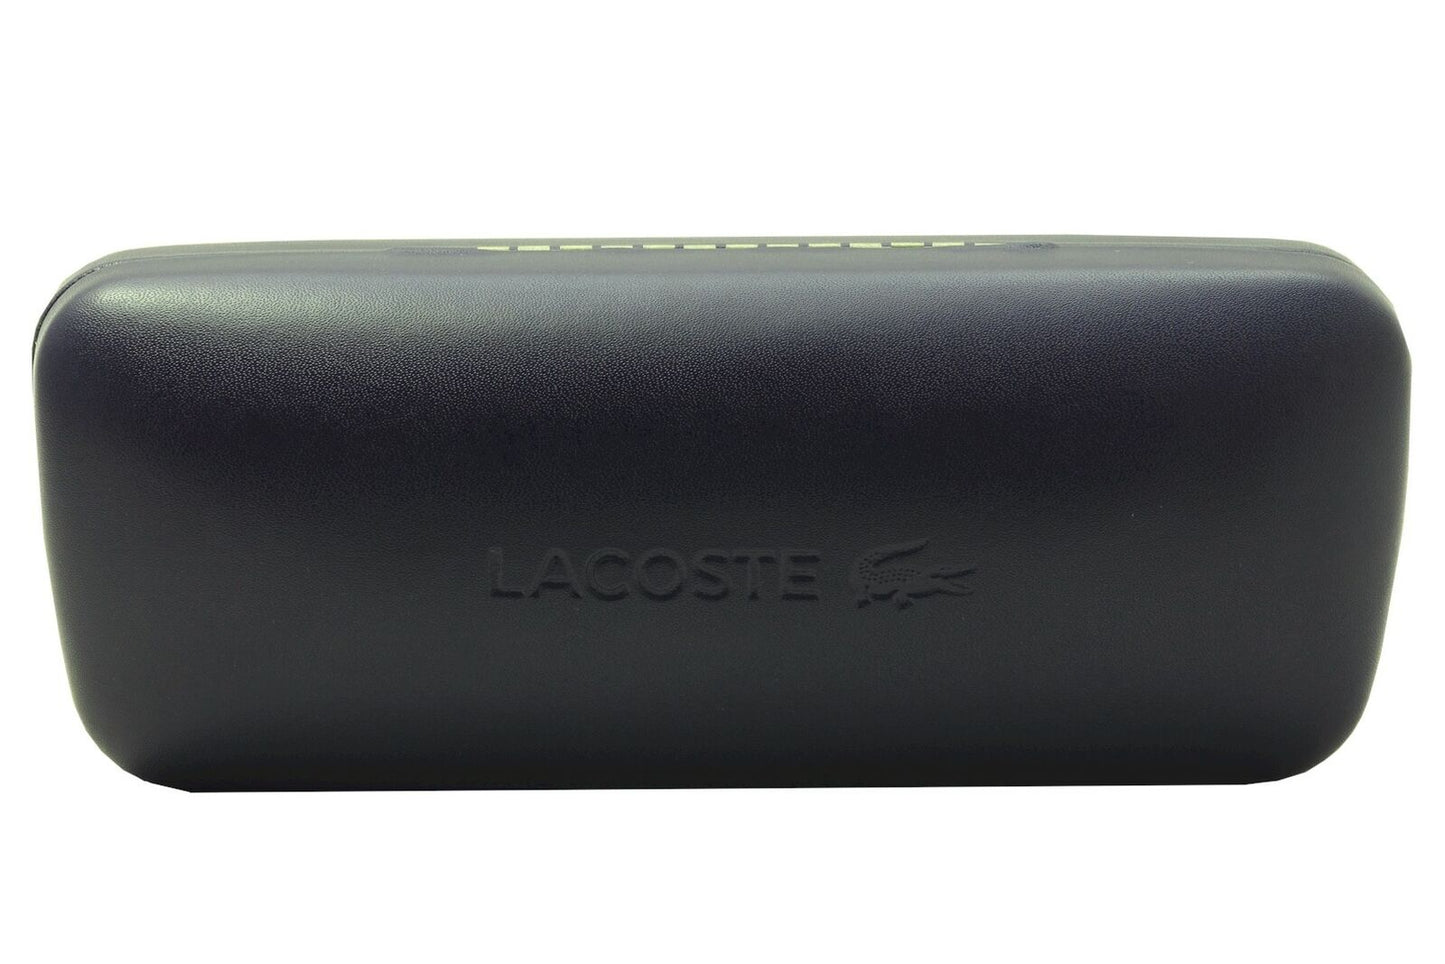 Lacoste L986S-001 52mm New Sunglasses